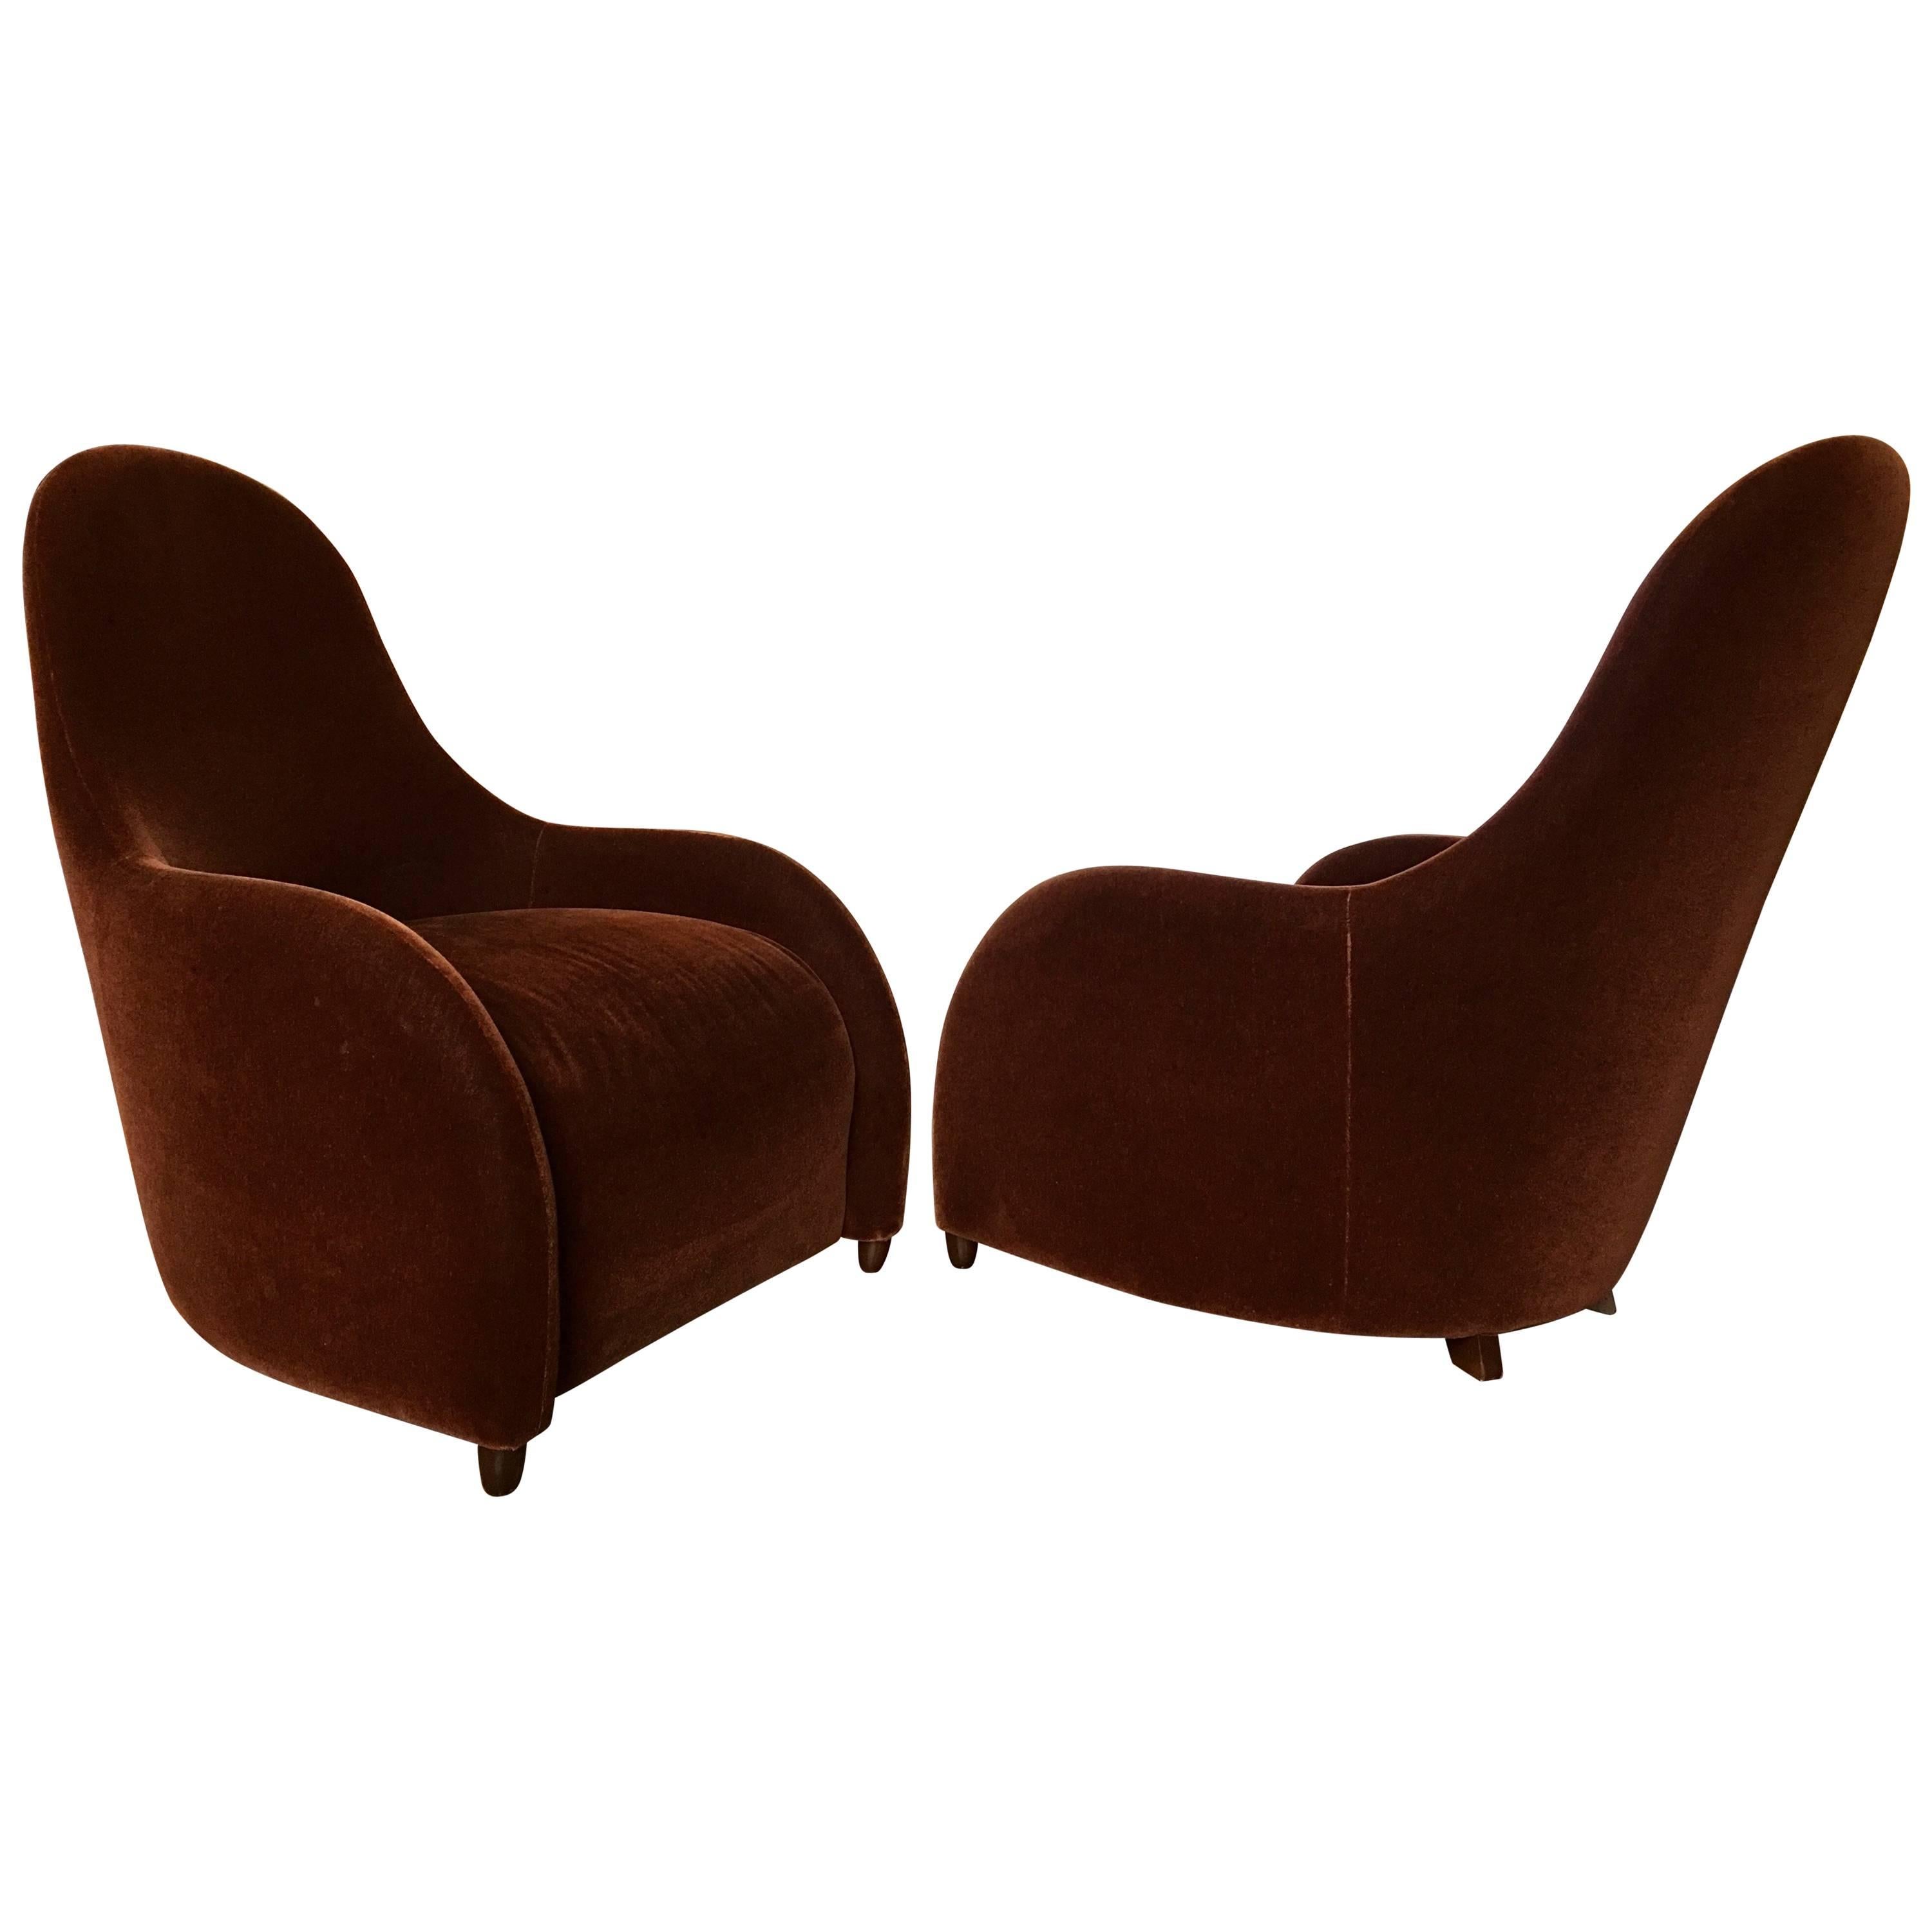 Brueton Mohair Lounge Chairs, Pair